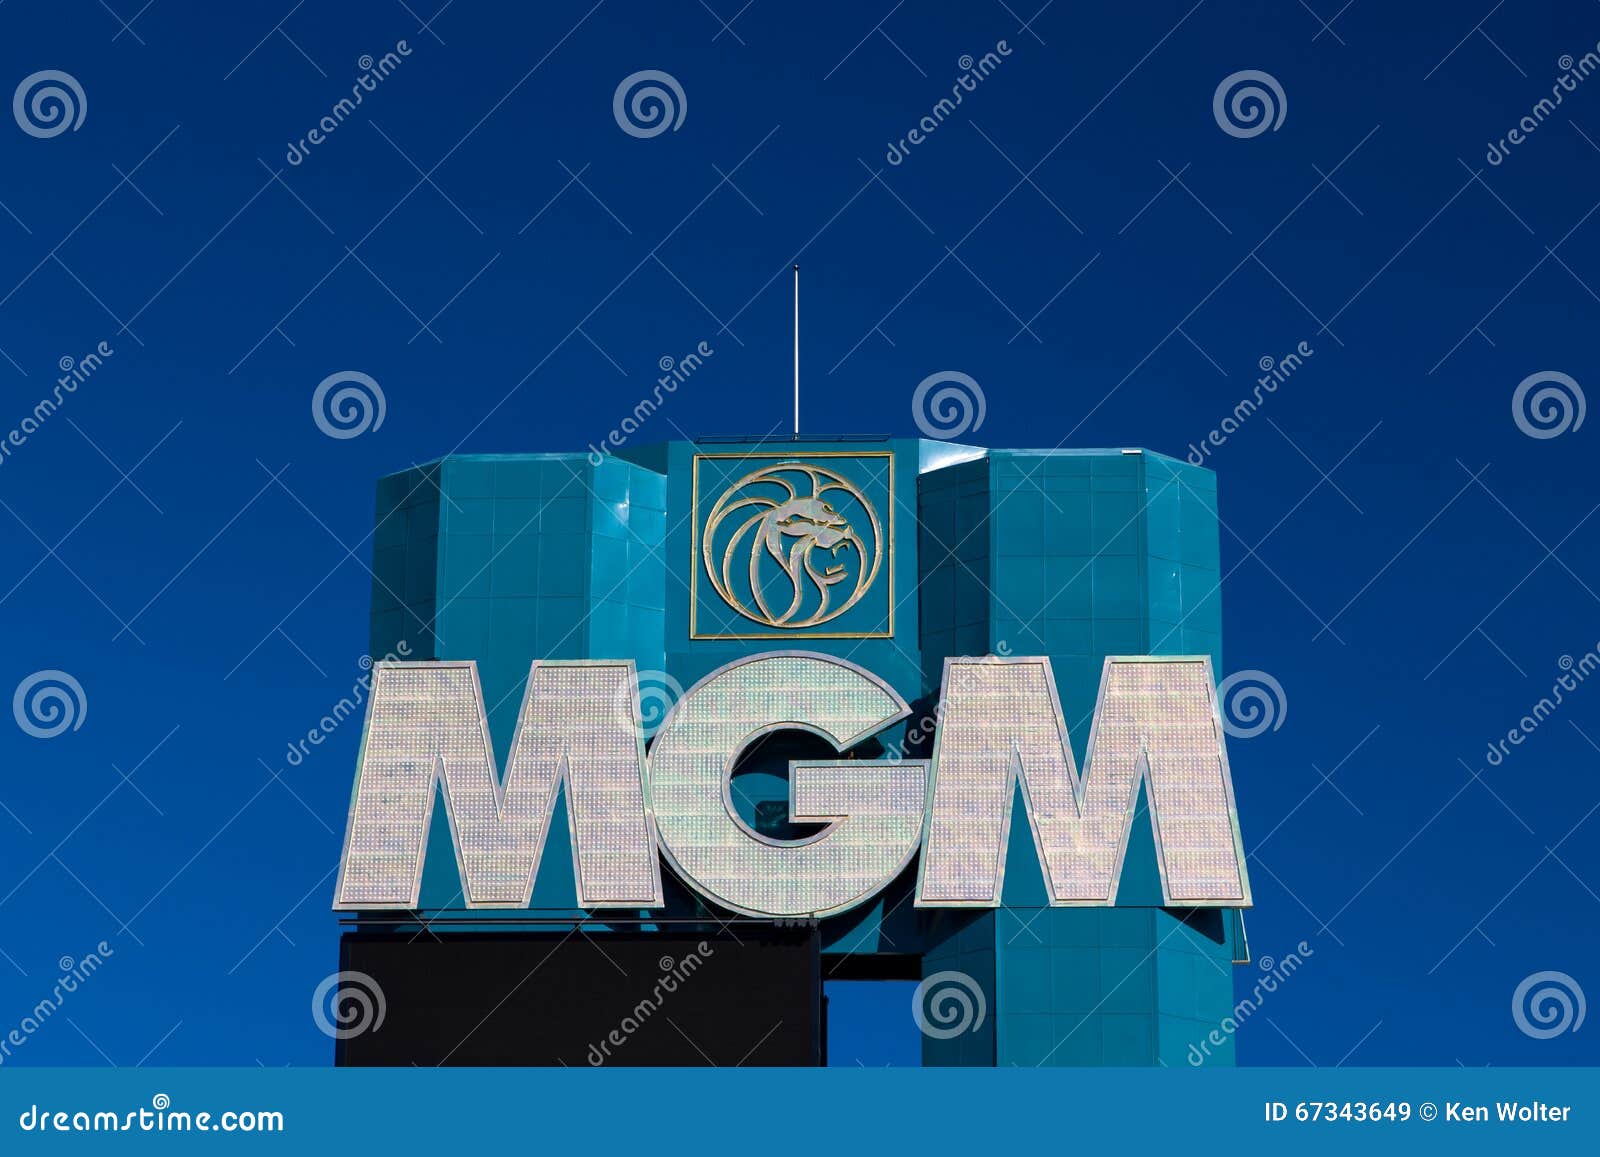 Mgm Grand Casino Las Vegas Nv February 6 Play Slots Online